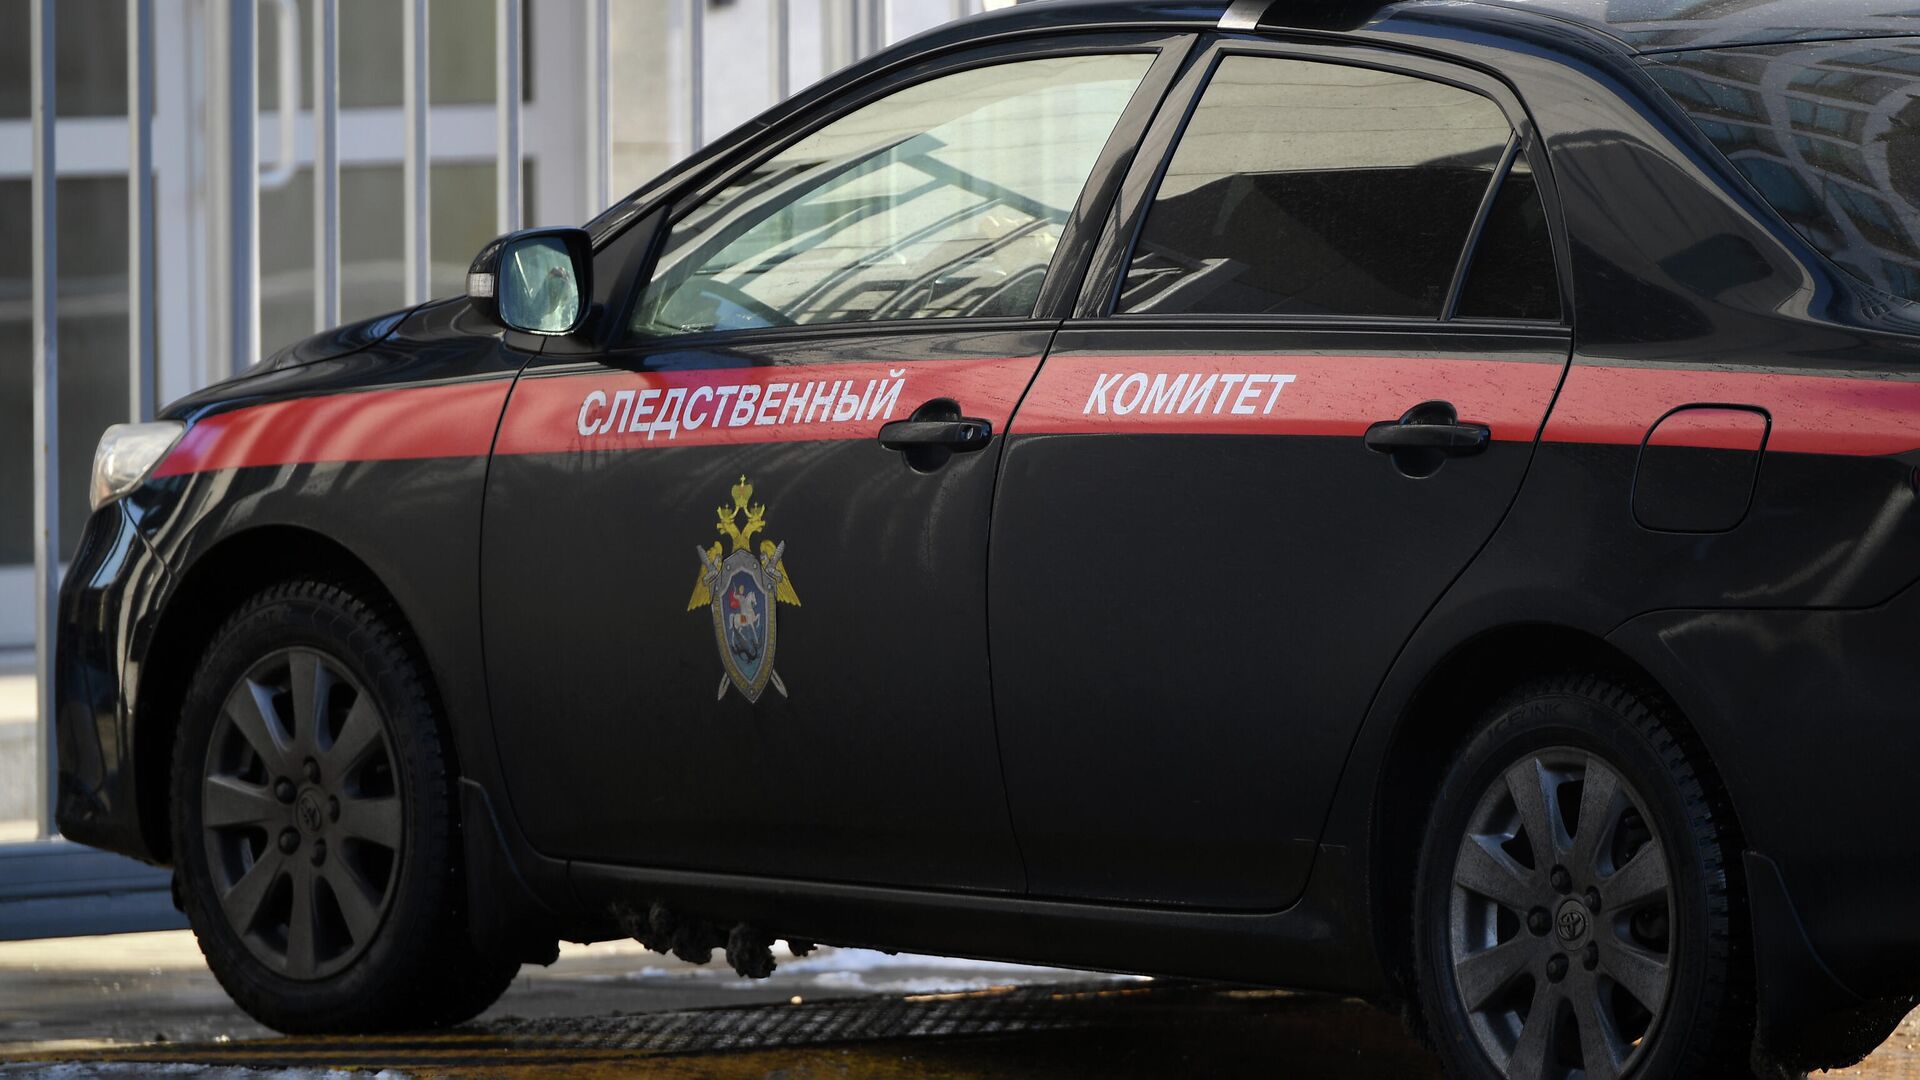 Жители Ленинградской области пожаловались на работу следователей